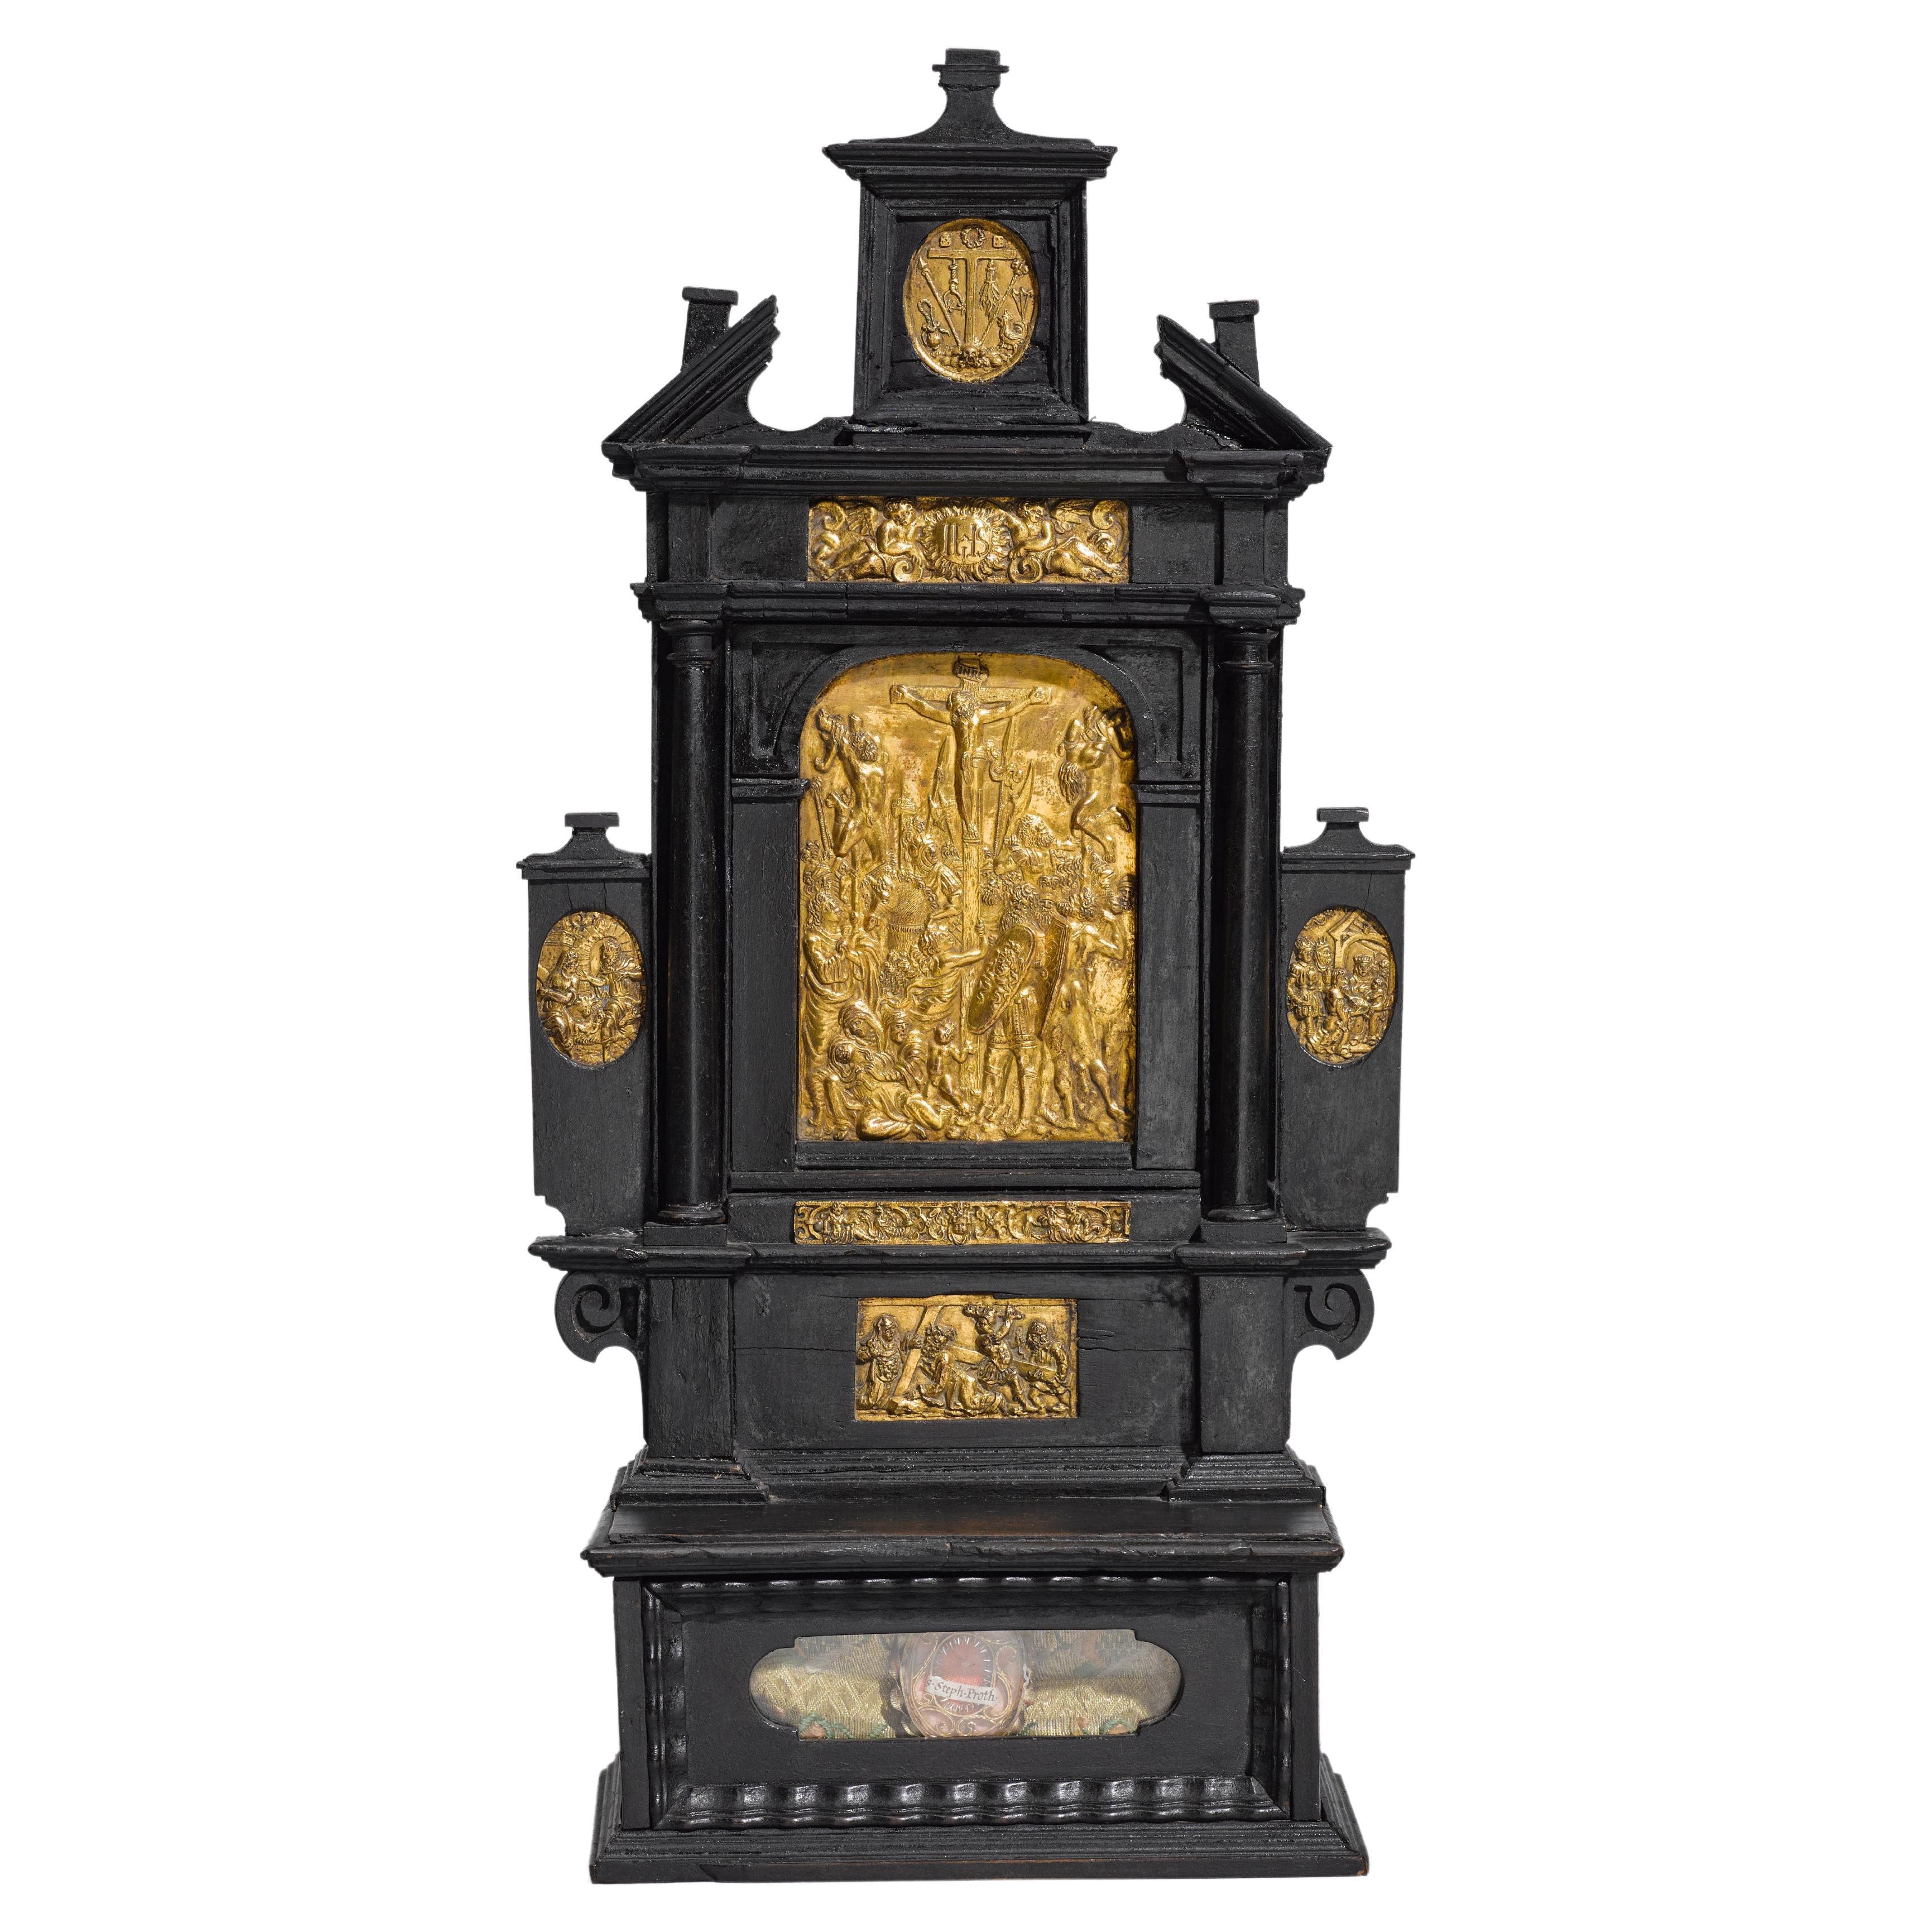 South German Renaissance House Altar, Tabernacle with Gilt Bronze Plaquettes